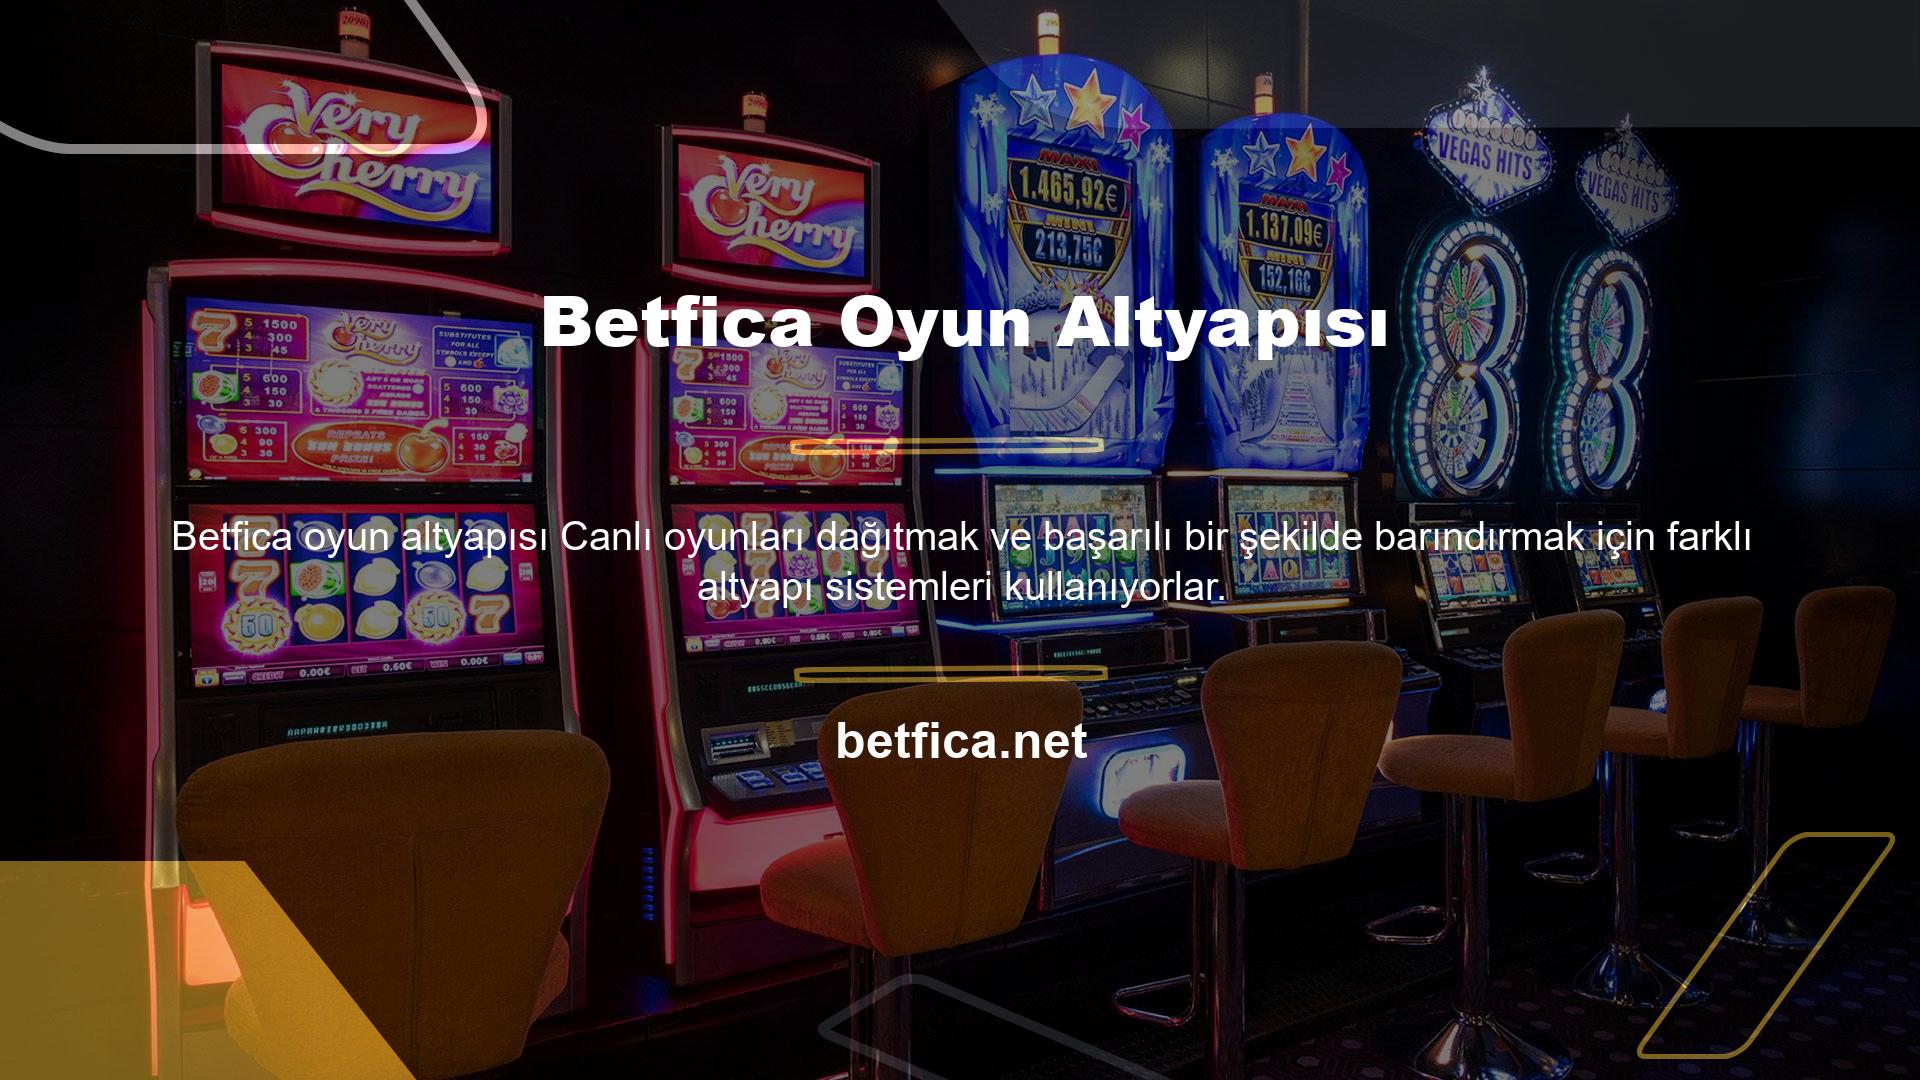 Spor bahisleri Betfica oyun sitesinde yer alan oyunlardan biri olmasına rağmen casino oyunlarına oldukça önem vermektedir